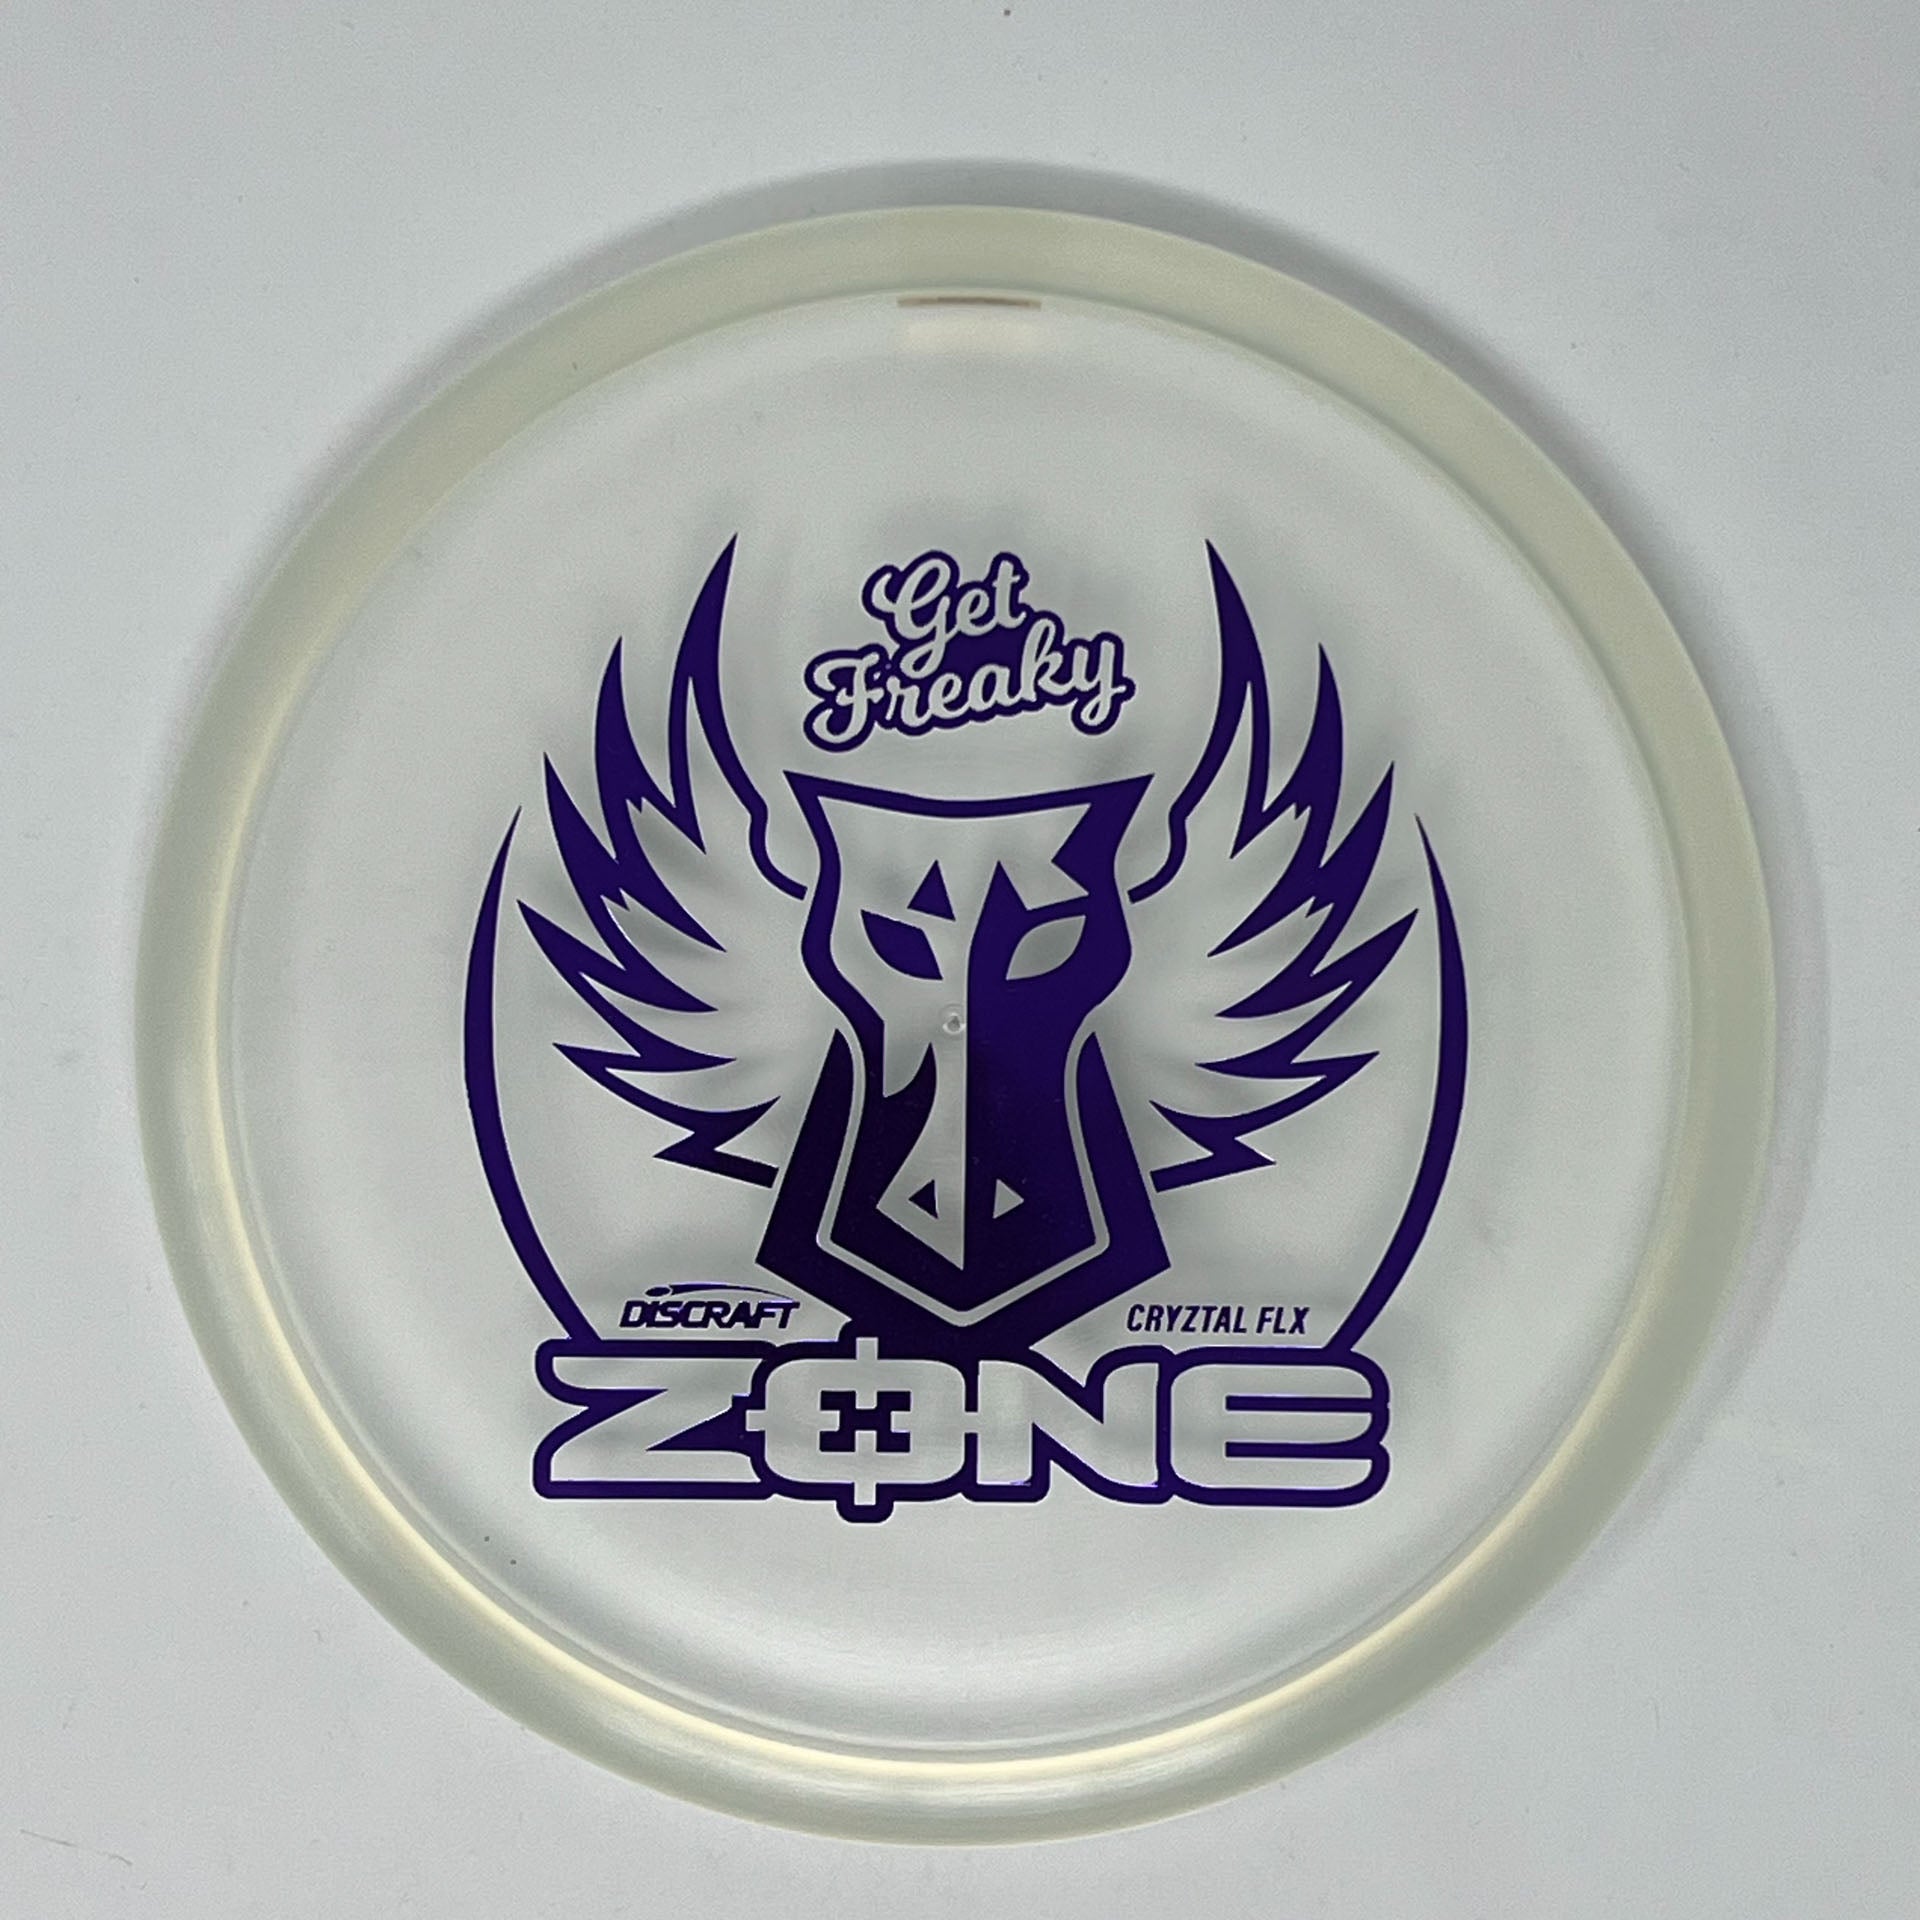 Discraft Cryztal FLX Zone (Brodie Smith "Get Freaky")